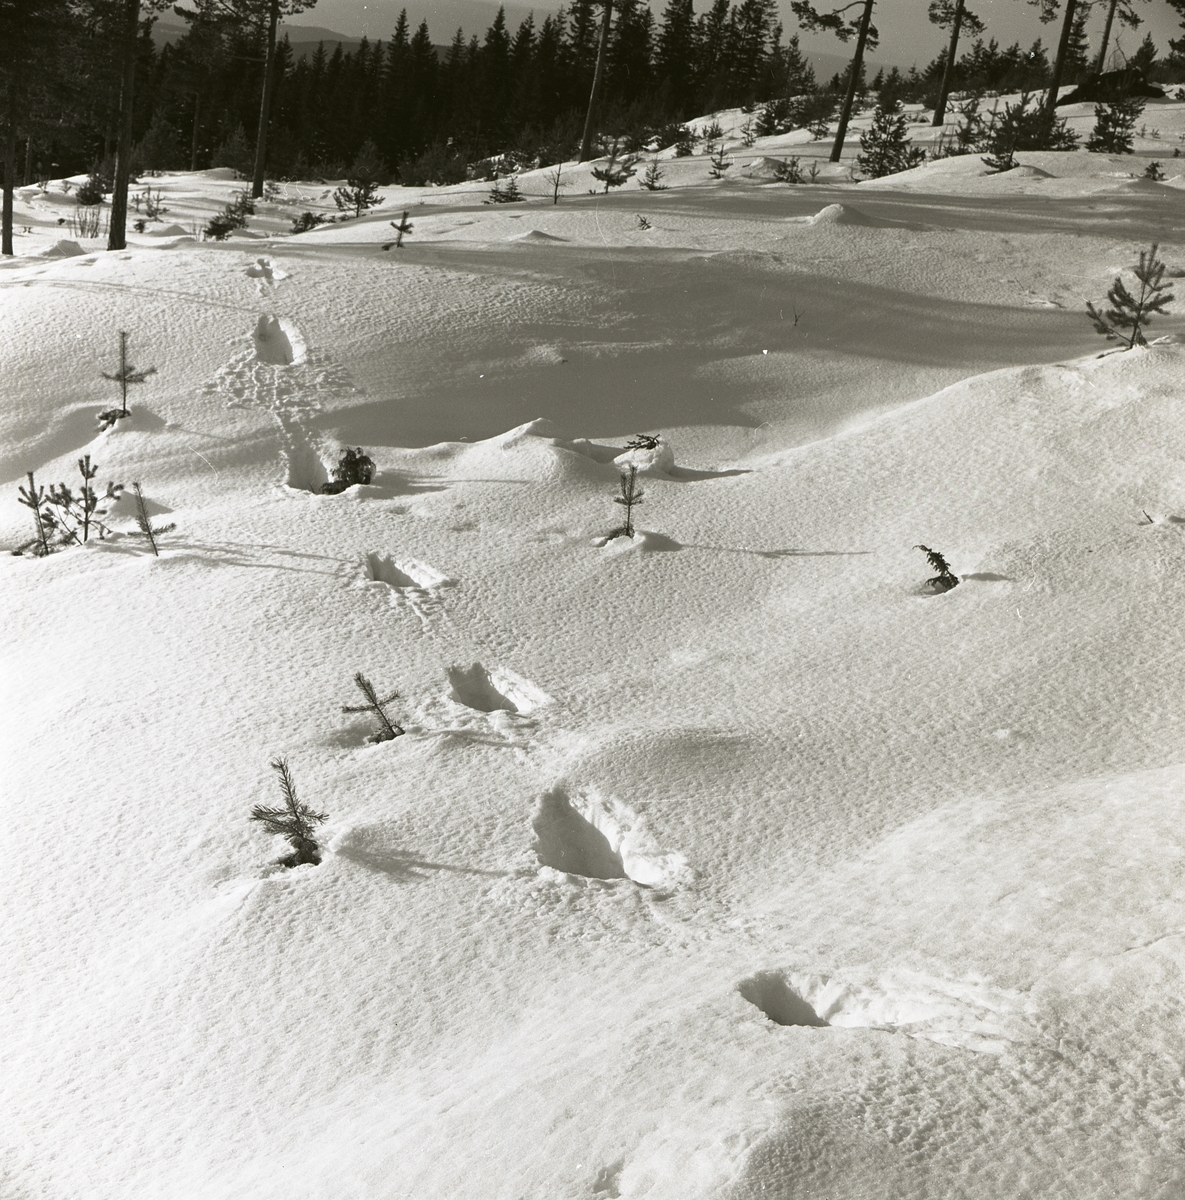 Spår av lodjur i snön vid Skogsberget, februari 1963.